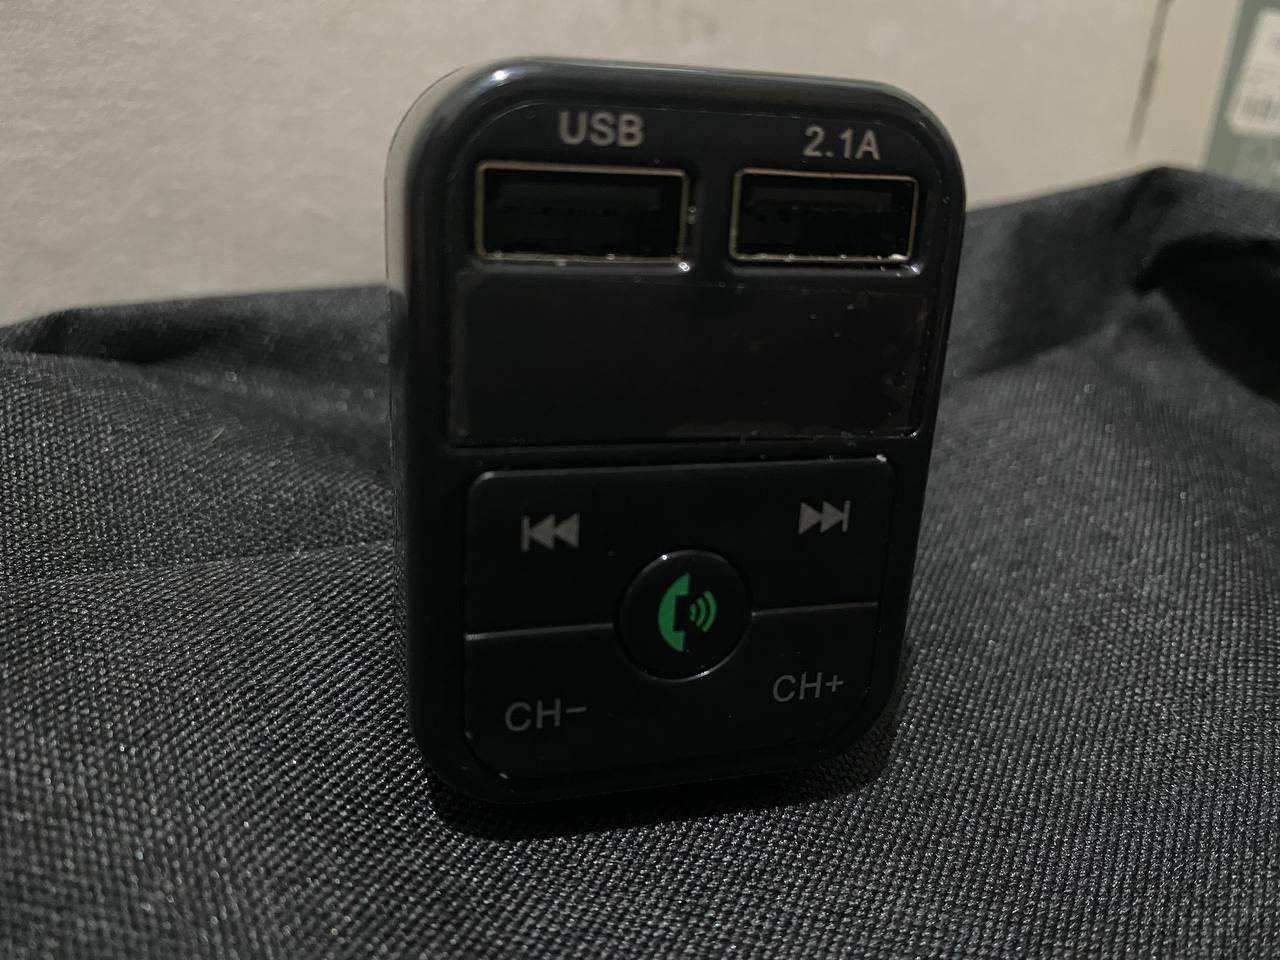 FM Модулятор для Авто CARB 2, Bluetooth, MP3, USB, AUX